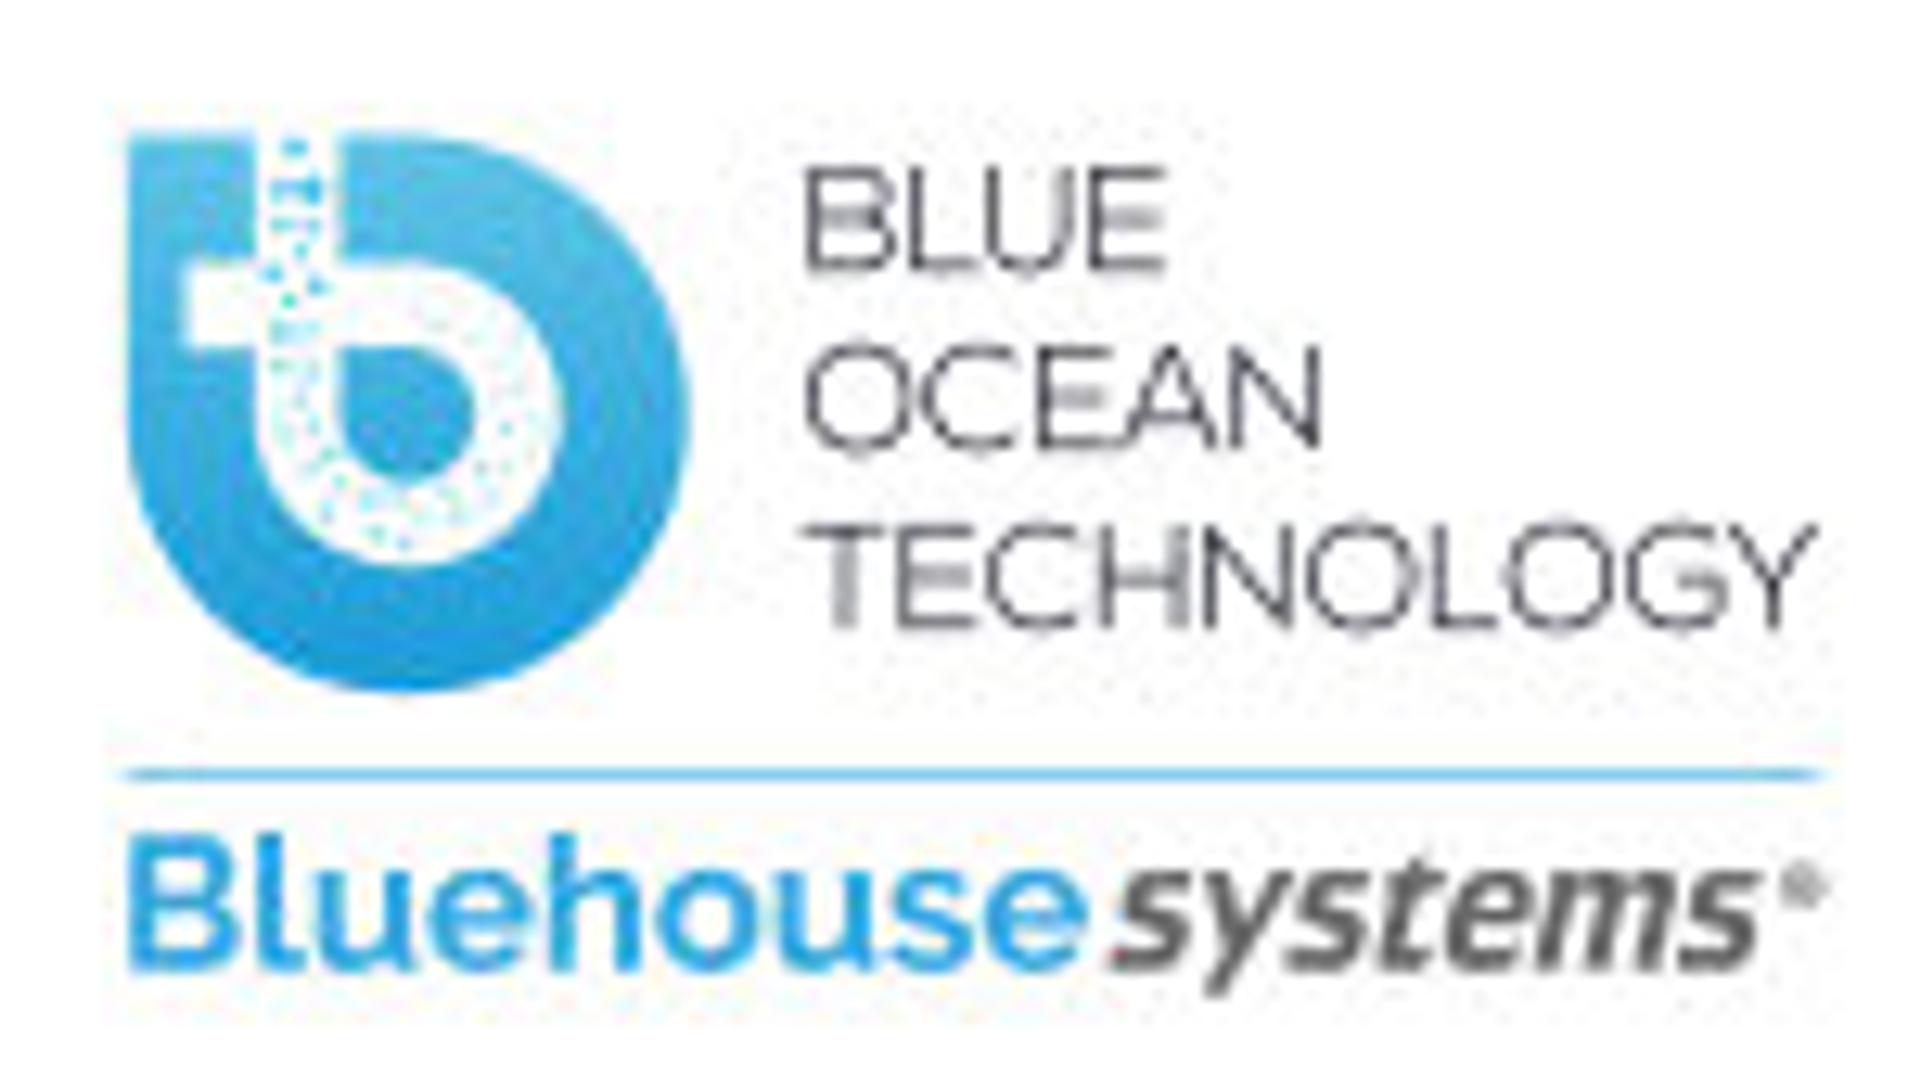 BLUE OCEAN TECHNOLOGY AS